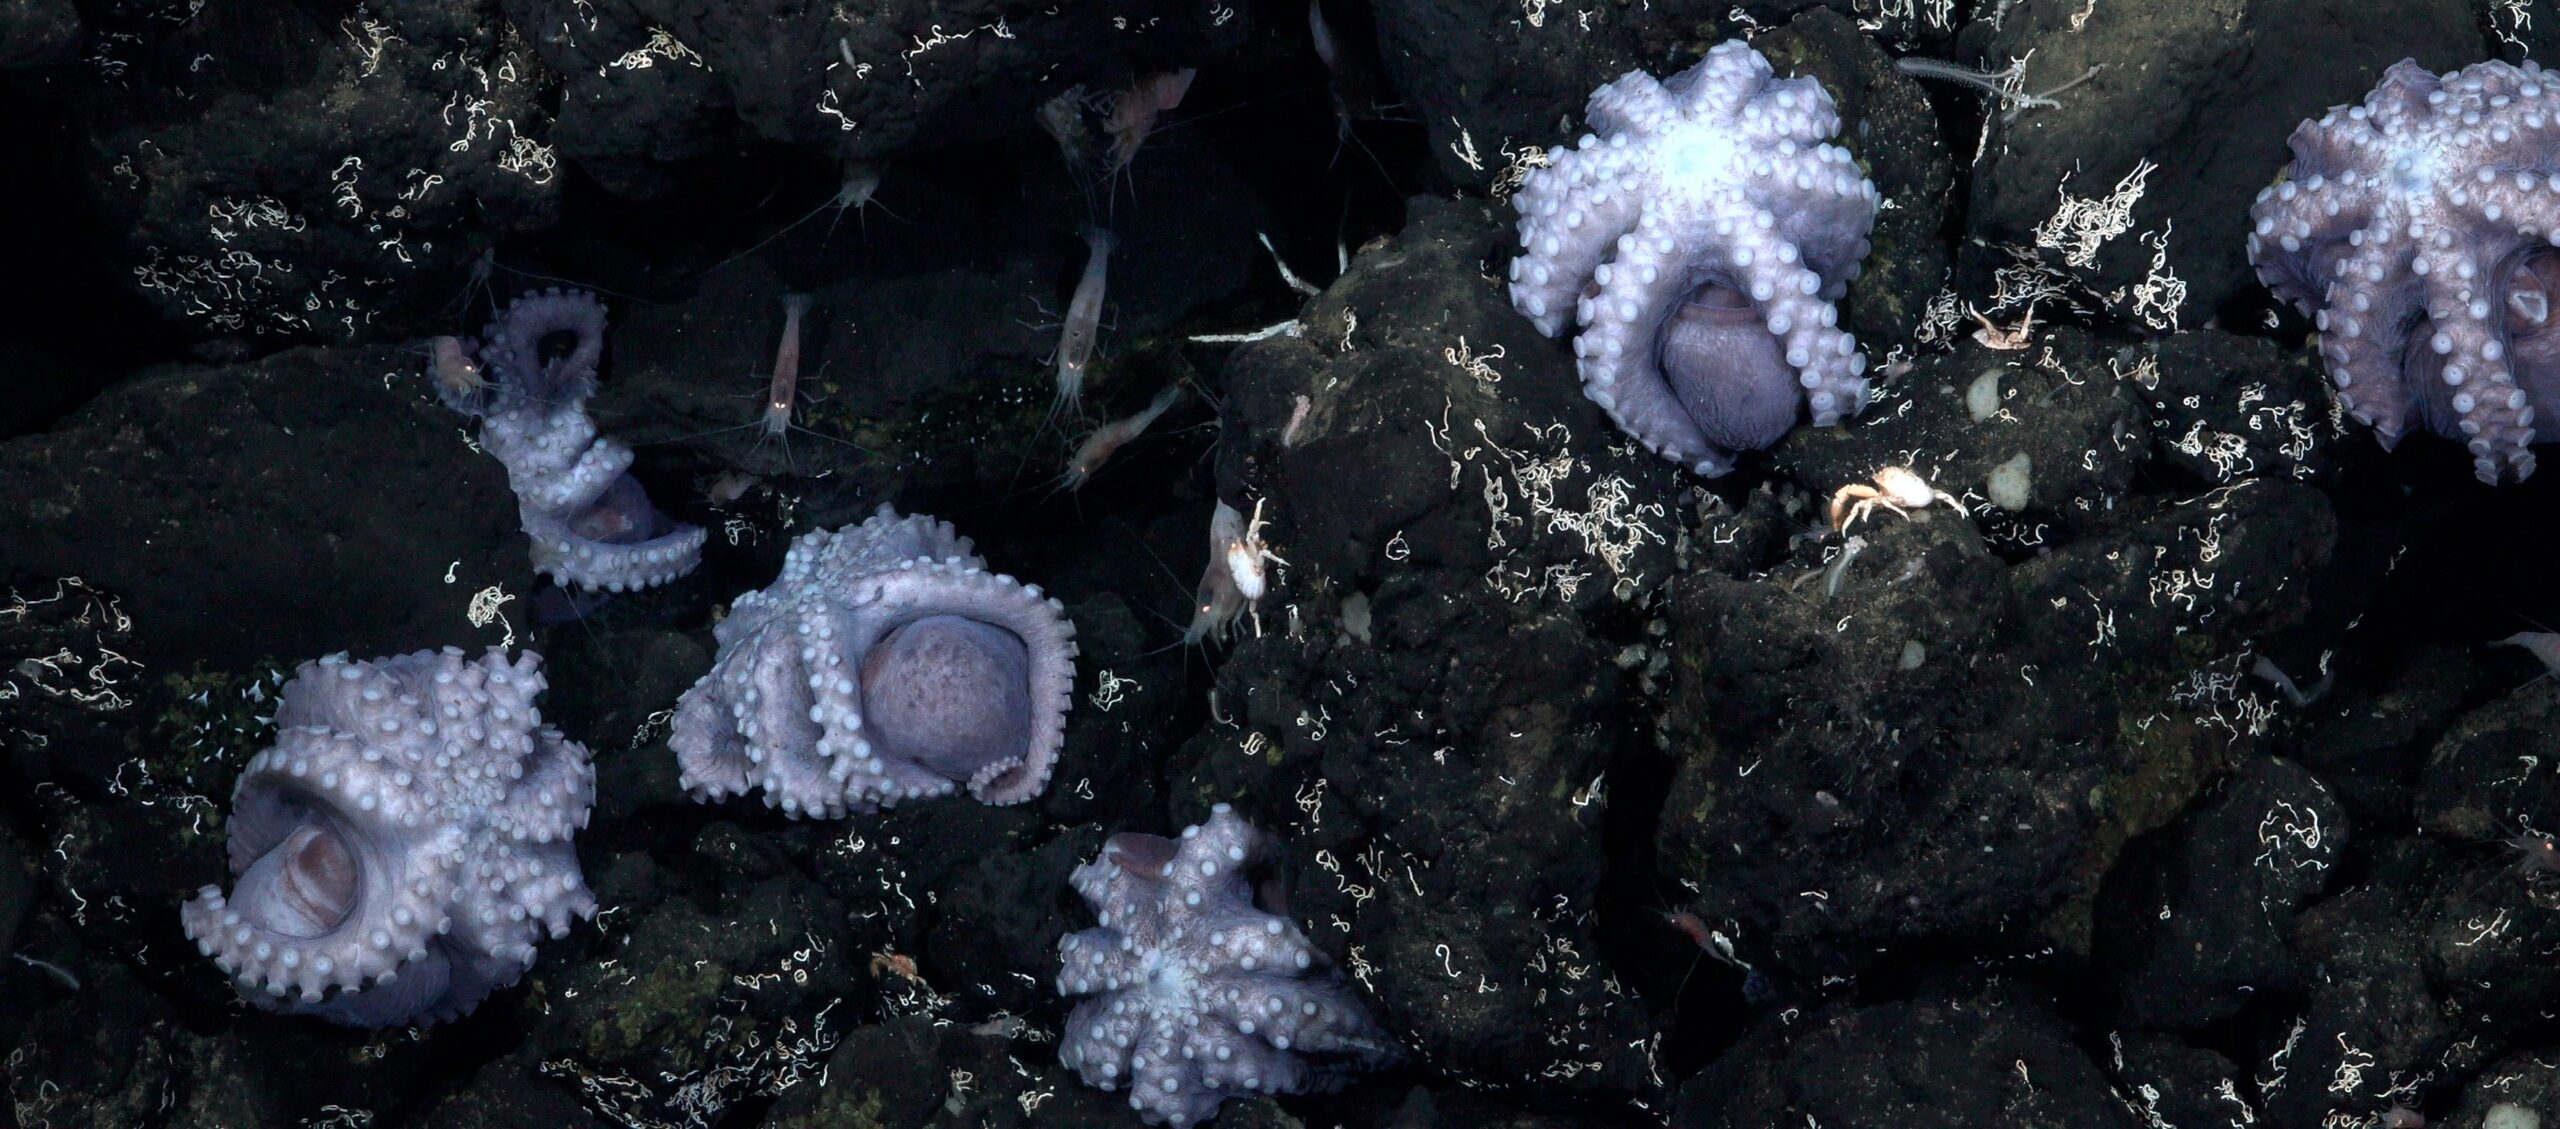 Investigadores descobrem novo berçário de polvos no fundo do mar na Costa Rica